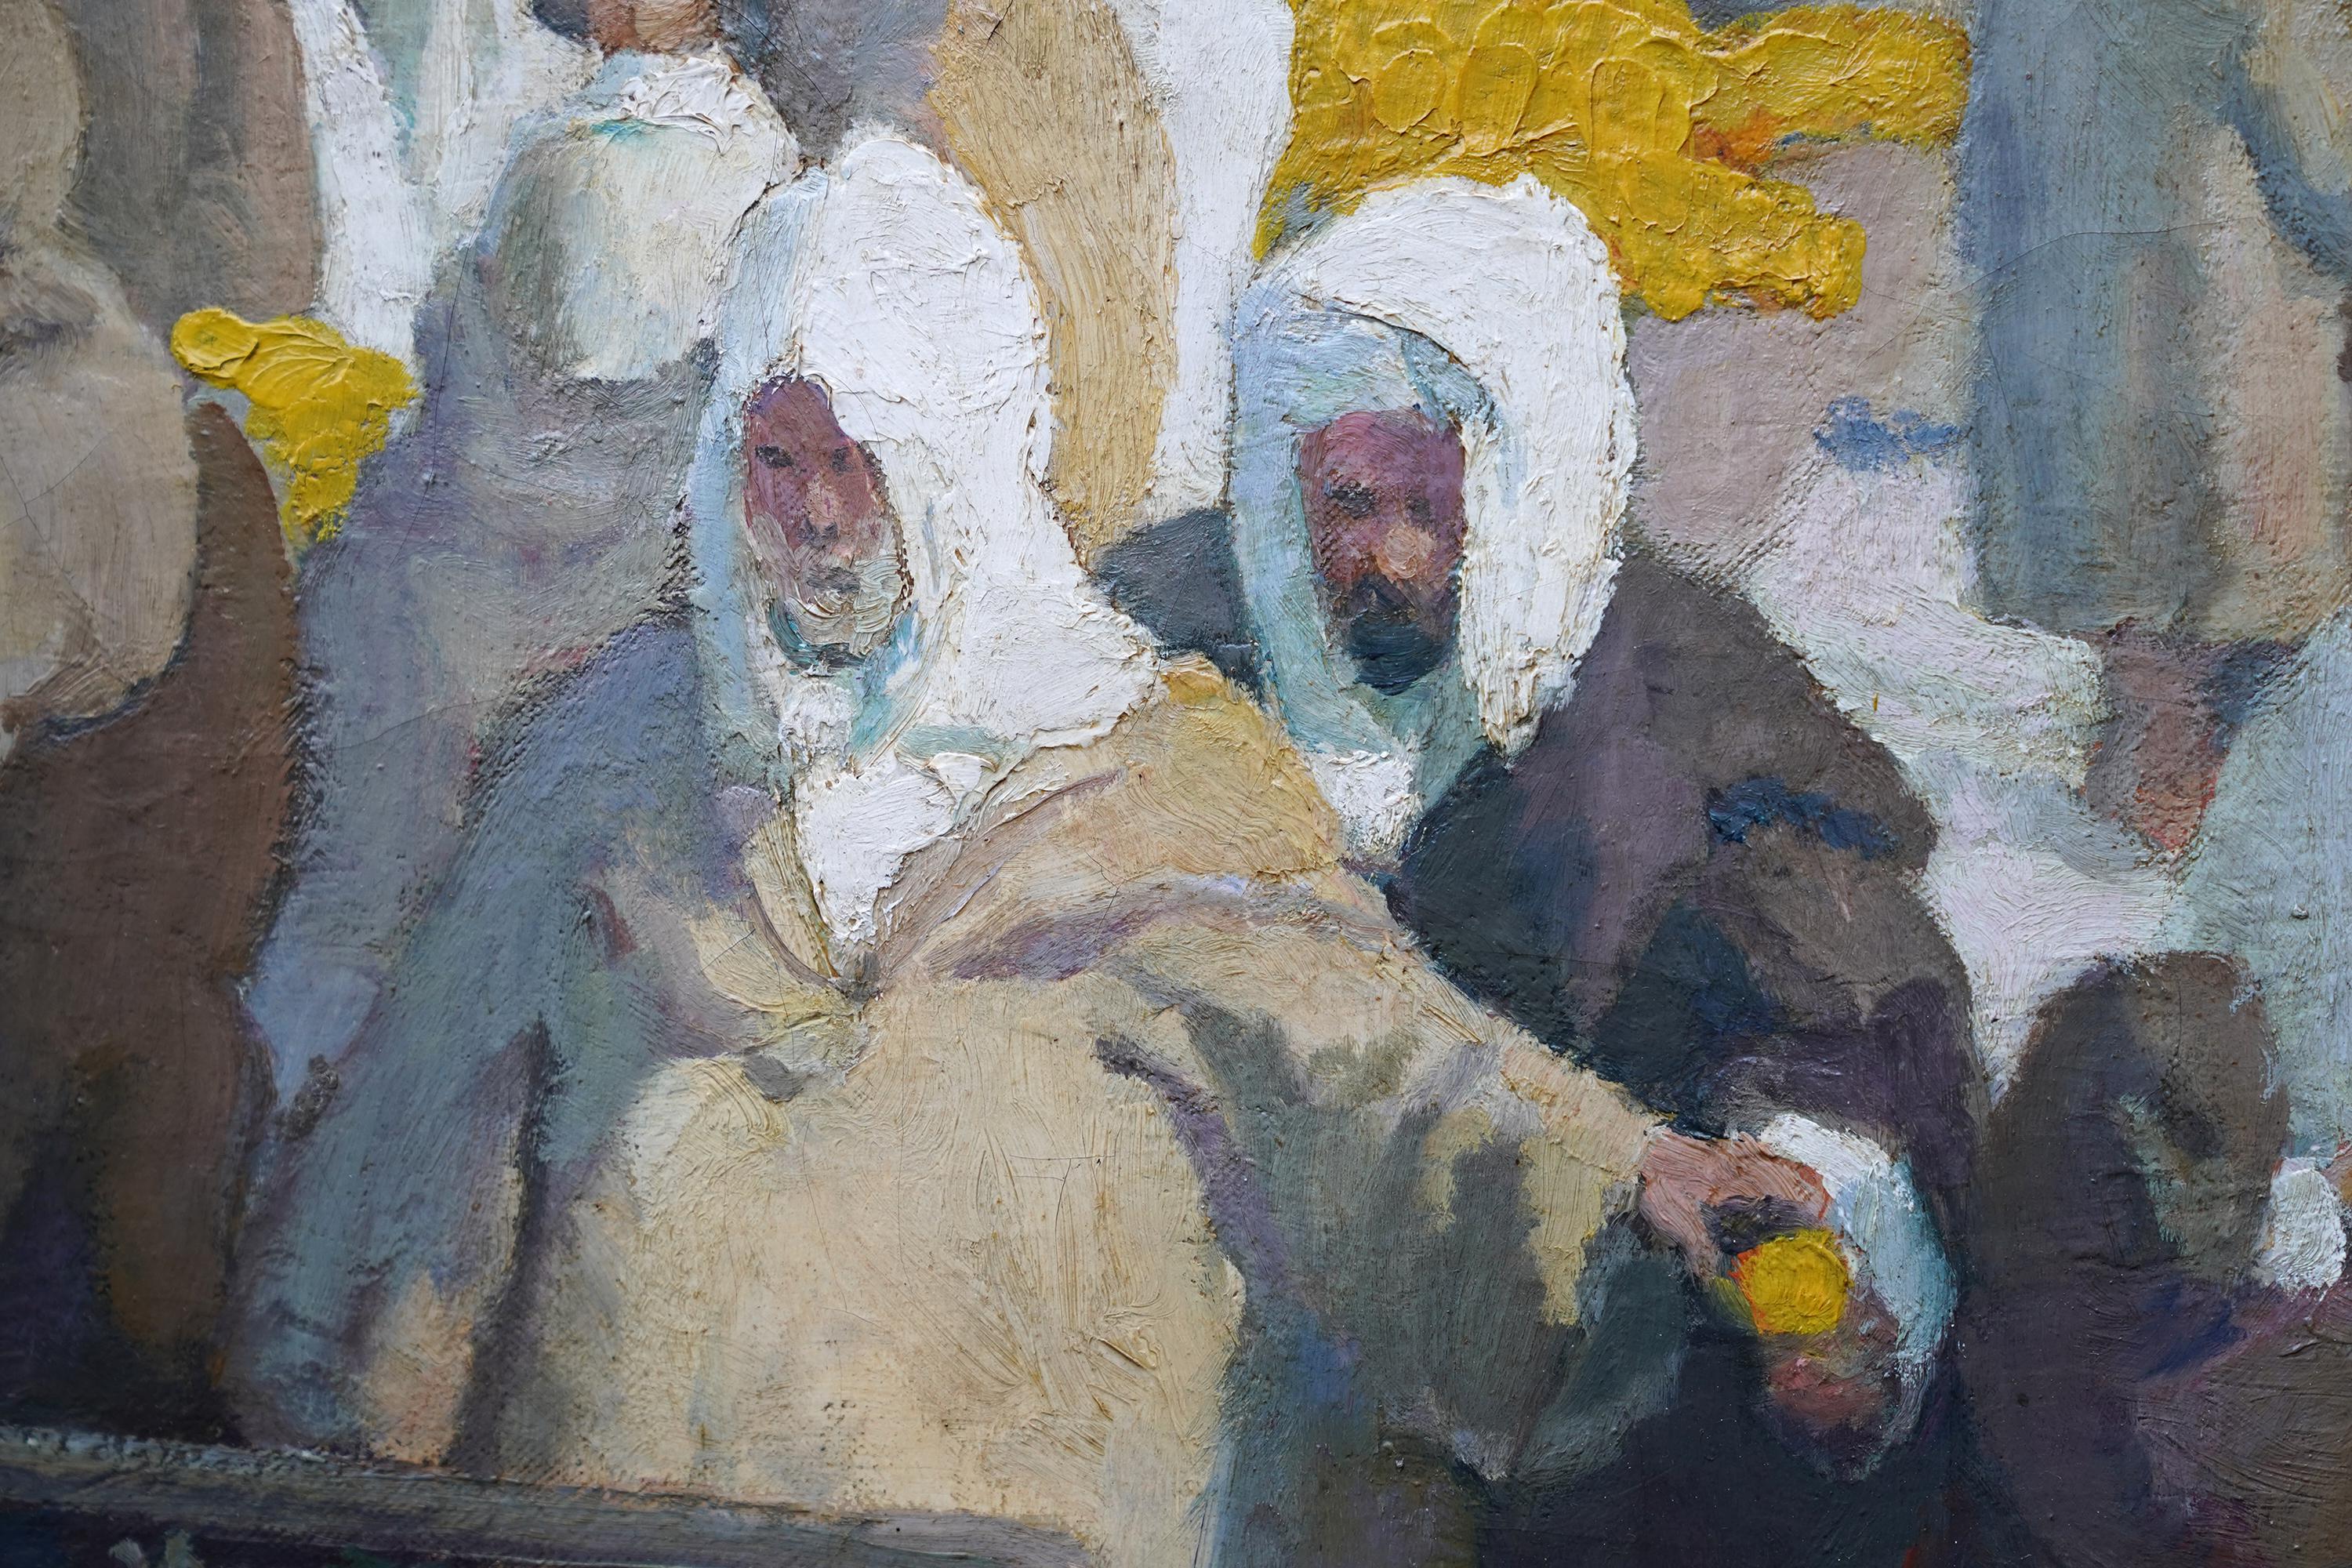 Tangiers Lemon Market - Peinture à l'huile d'art figuratif oriental britannique des années 1920  - Post-impressionnisme Painting par Spencer Pryse